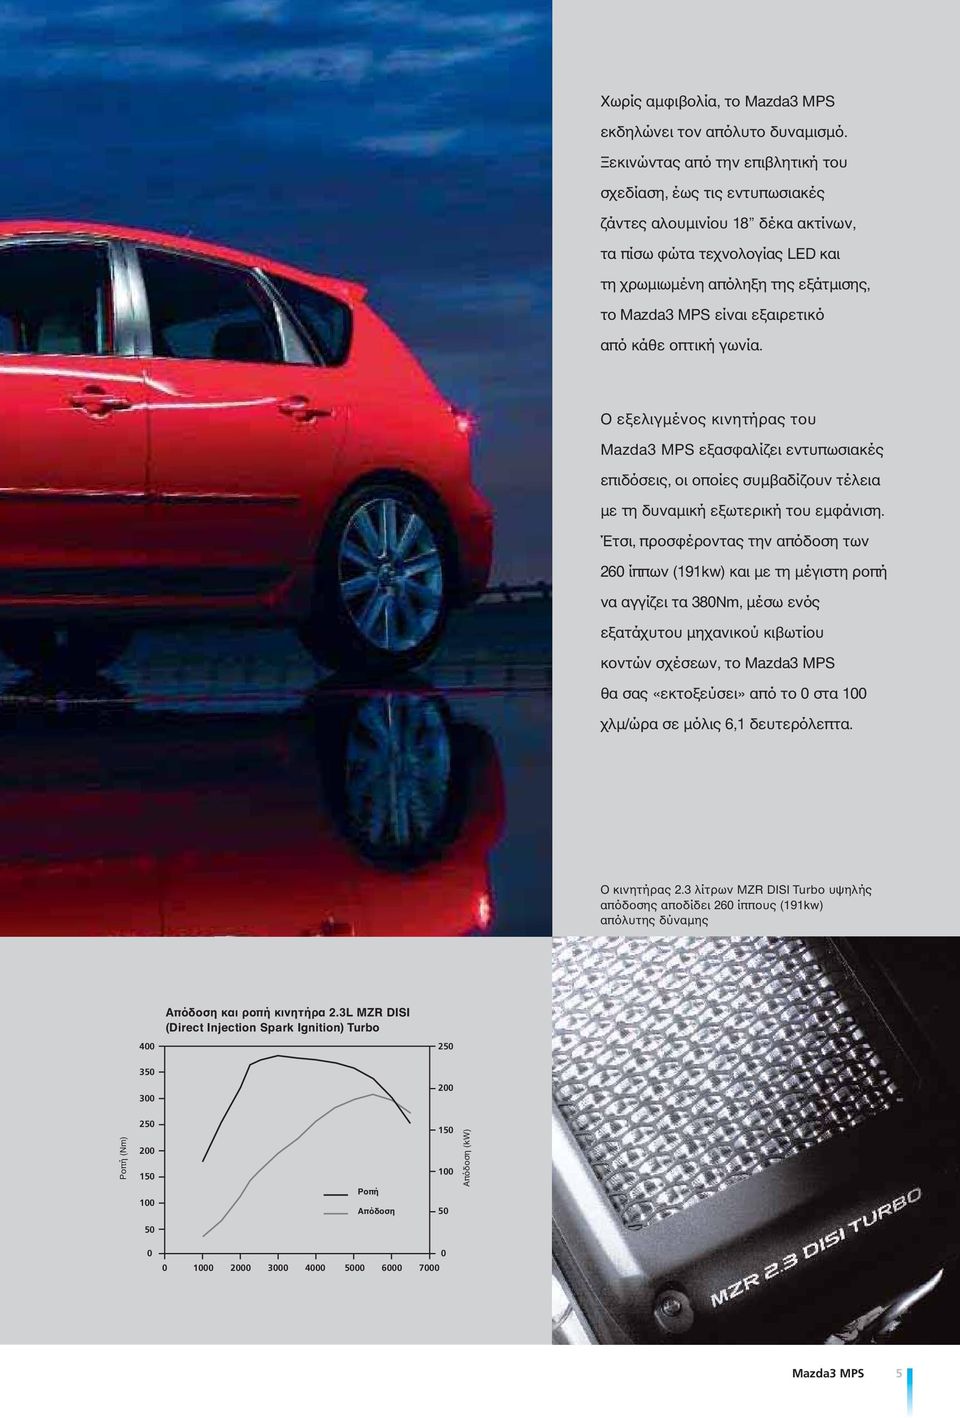 εξαιρετικό από κάθε οπτική γωνία. Ο εξελιγμένος κινητήρας του Mazda3 MPS εξασφαλίζει εντυπωσιακές επιδόσεις, οι οποίες συμβαδίζουν τέλεια με τη δυναμική εξωτερική του εμφάνιση.